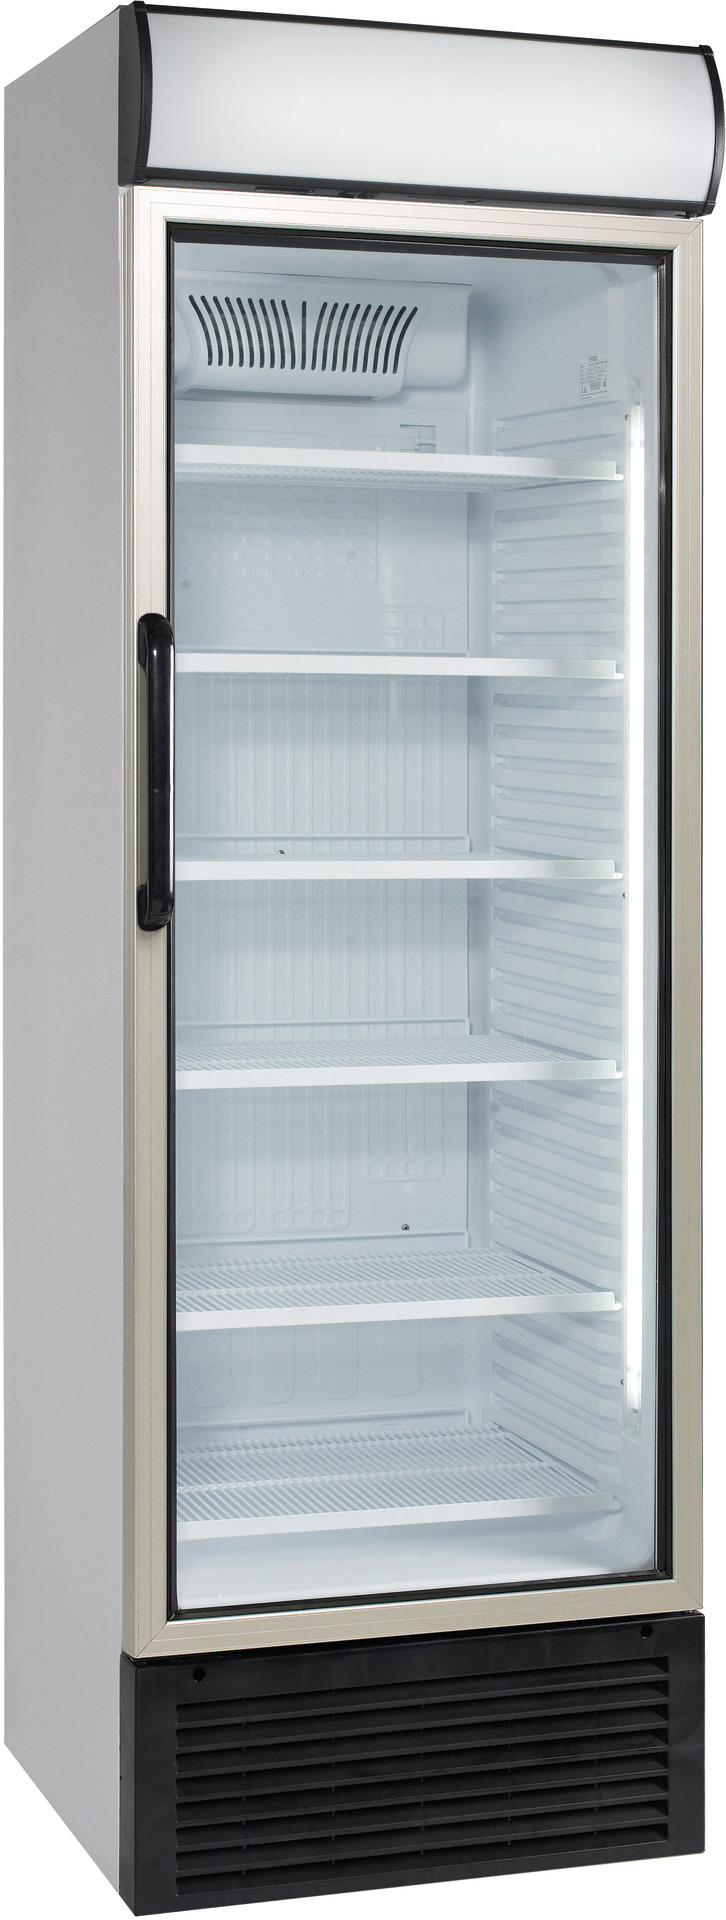 Umluft-Glastürkühlschrank mit Griff  438,00 l / mit Werbe-Display